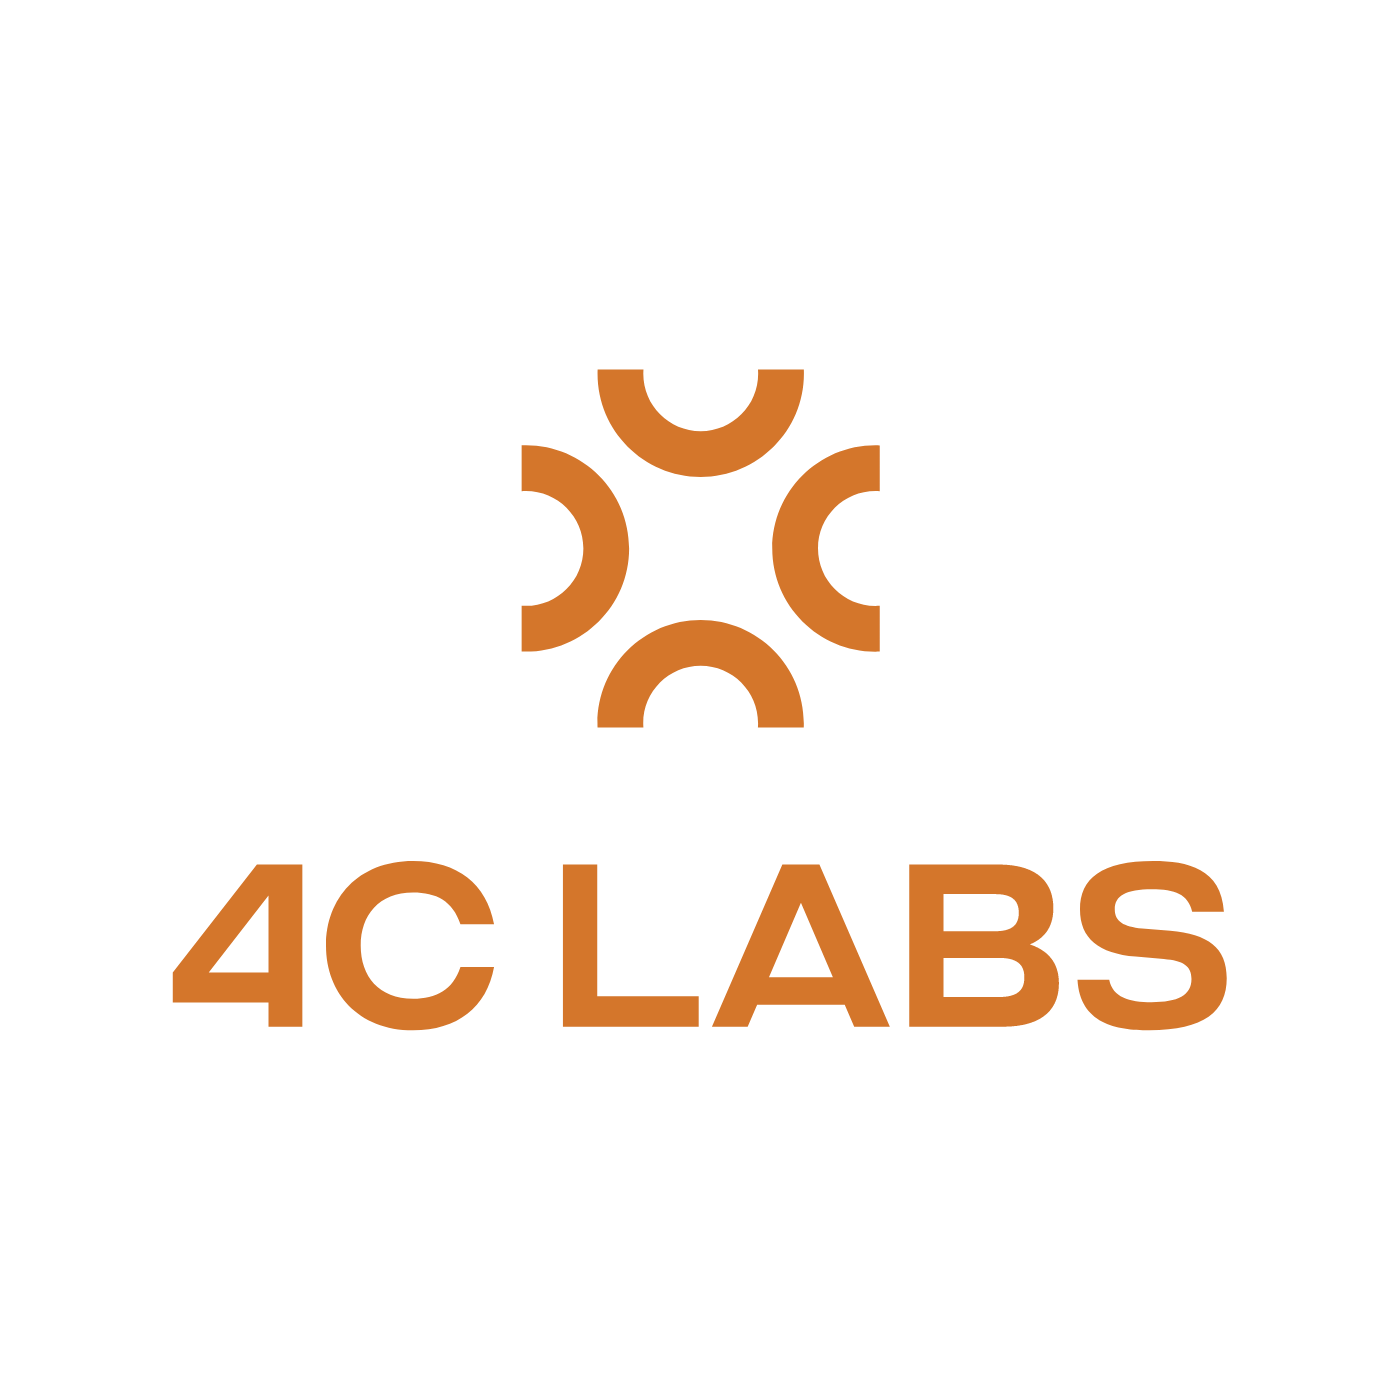 4C Labs